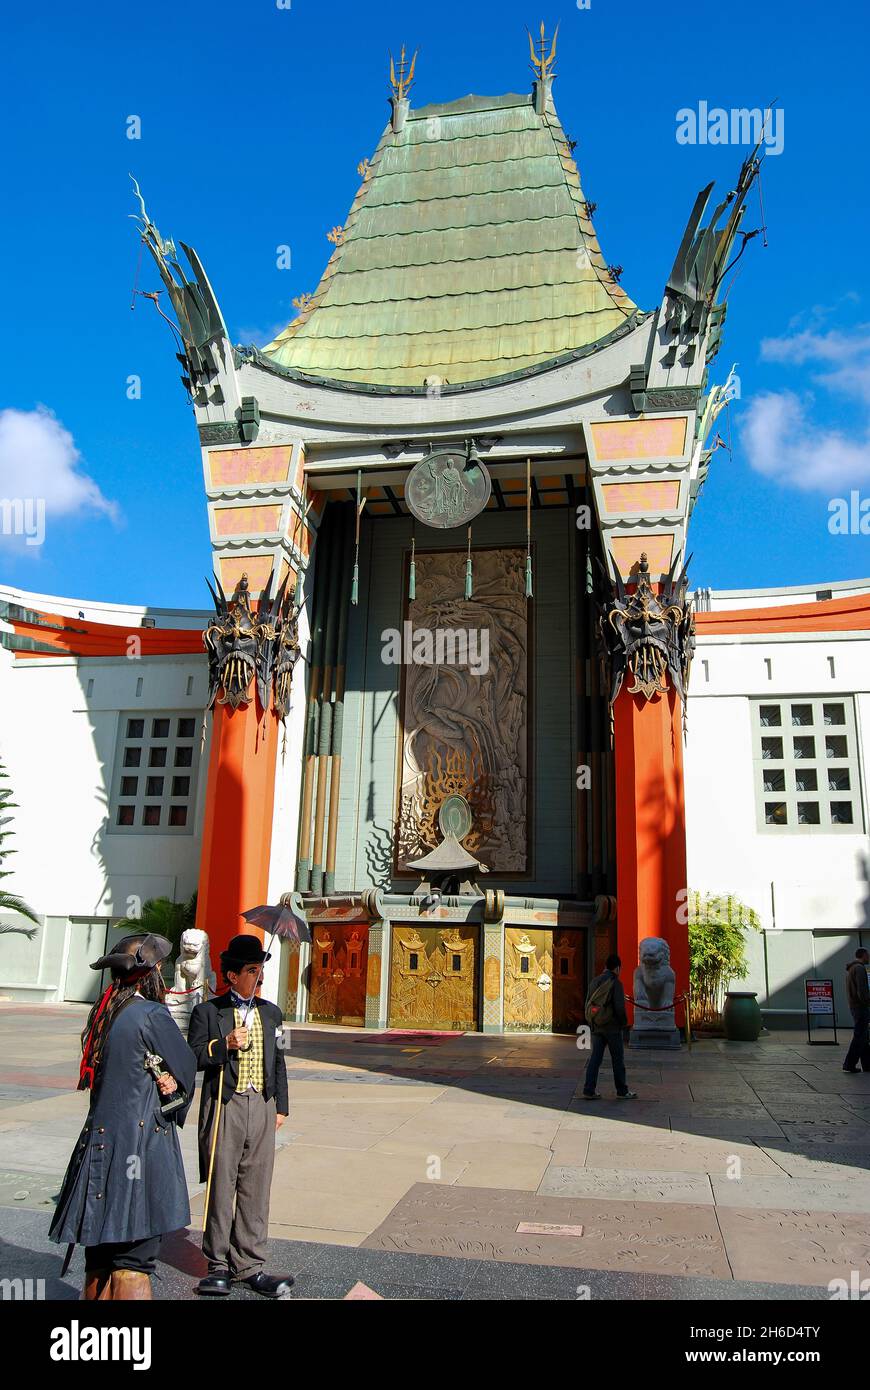 Eintritt zum TCL Grauman's Chinese Theatre, Hollywood Boulevard, Hollywood, Los Angeles, Kalifornien, Vereinigte Staaten von Amerika Stockfoto